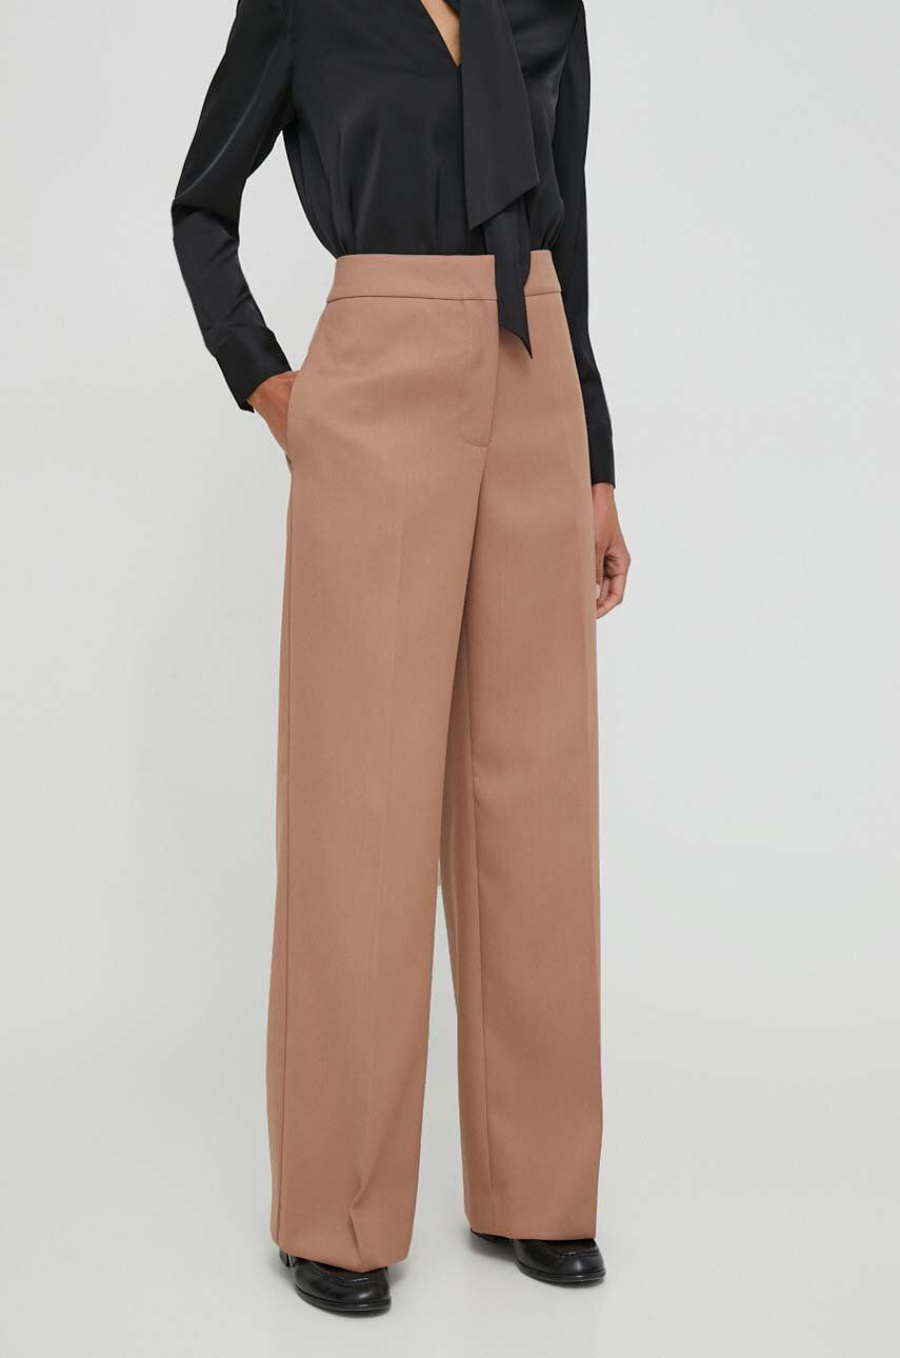 Брюки Calvin Klein женские, коричневые, размер 48, K20K206333